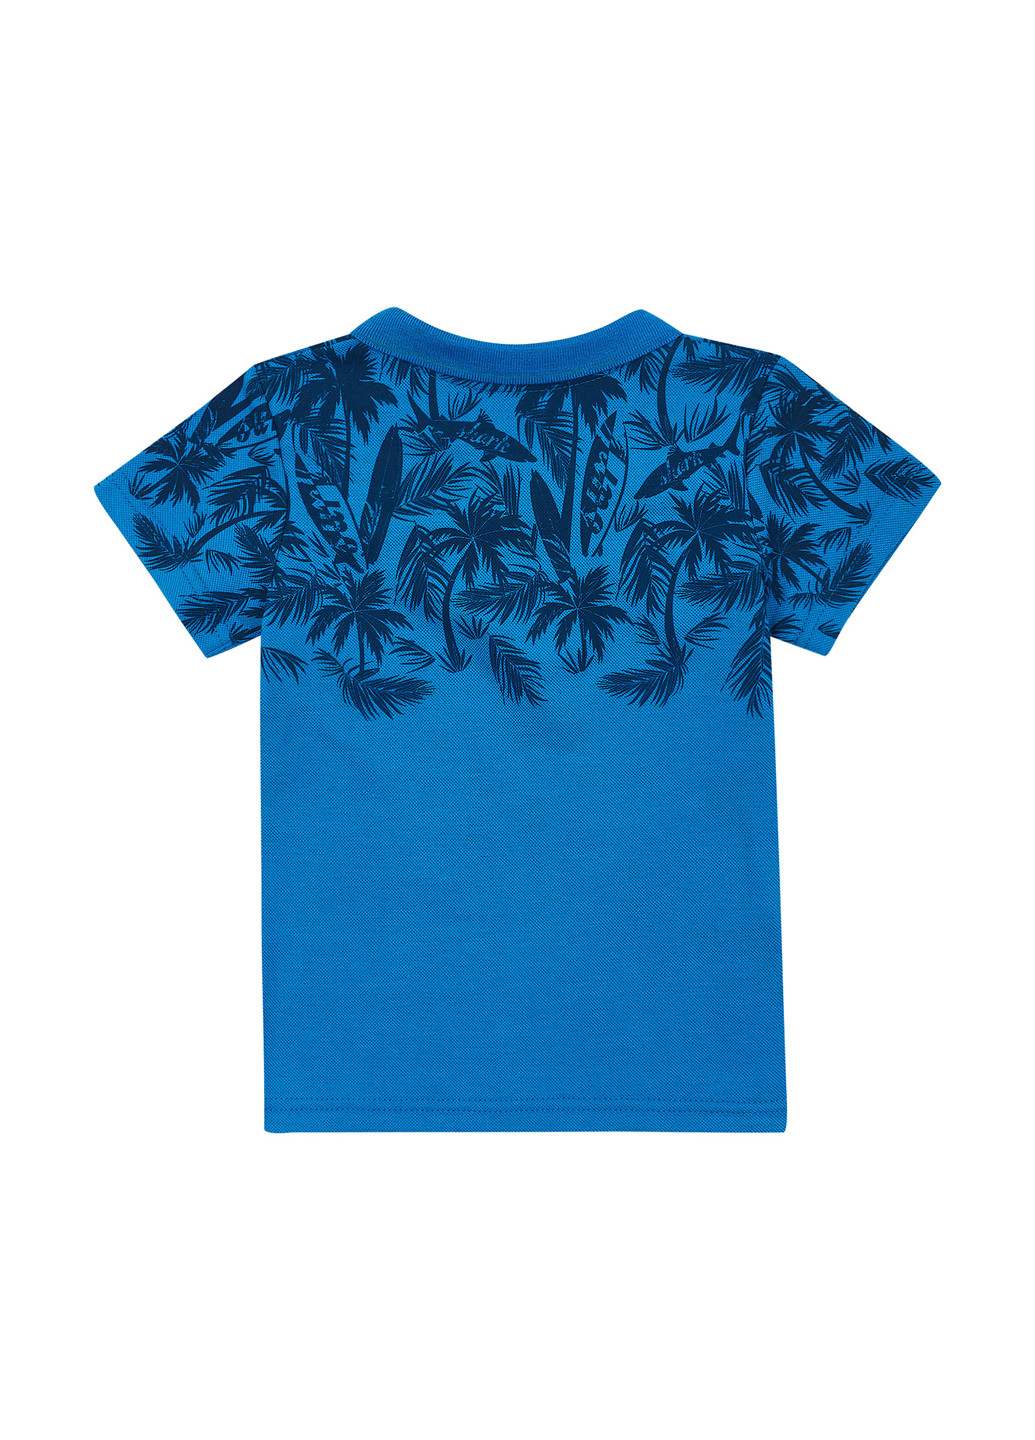 Синяя детская футболка-поло для мальчика Z16 с рисунком